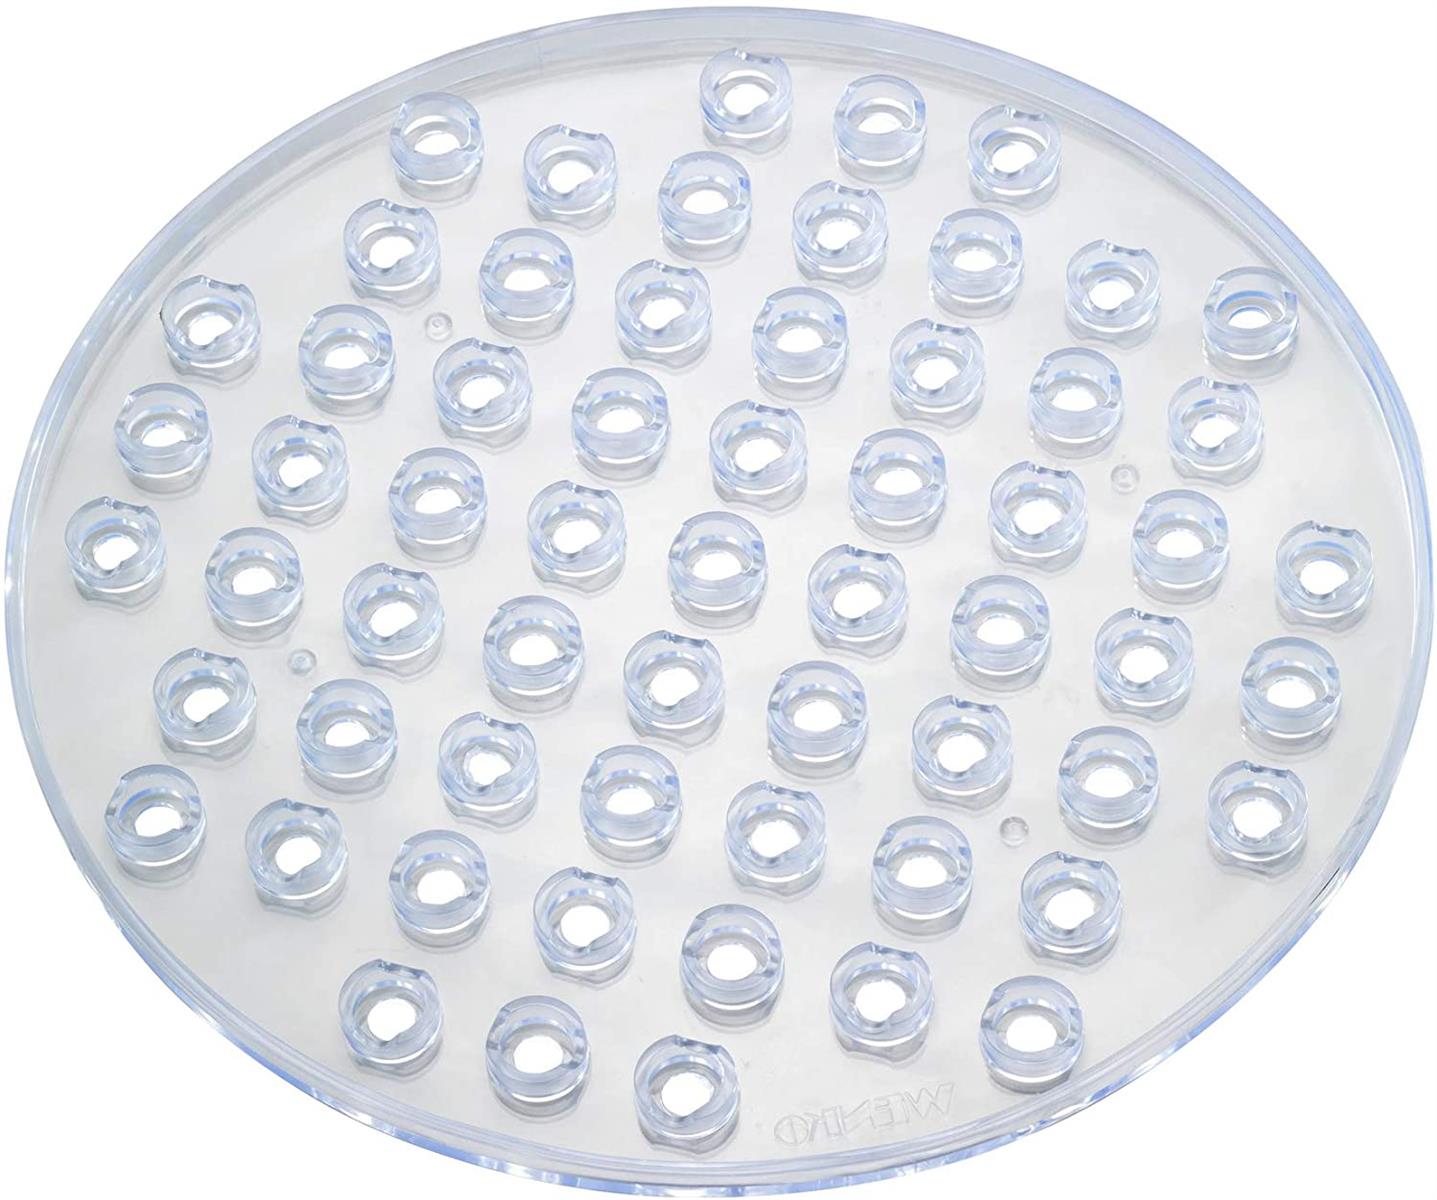 Runde Spülbeckeneinlage Kristall, schützt vor Kratzern an Geschirr & Spülbecken, reduziert Wasserspritzen & verhindert Wasserstau, robuster, pflegeleichter Kunststoff, Ø 31 cm, Transparent